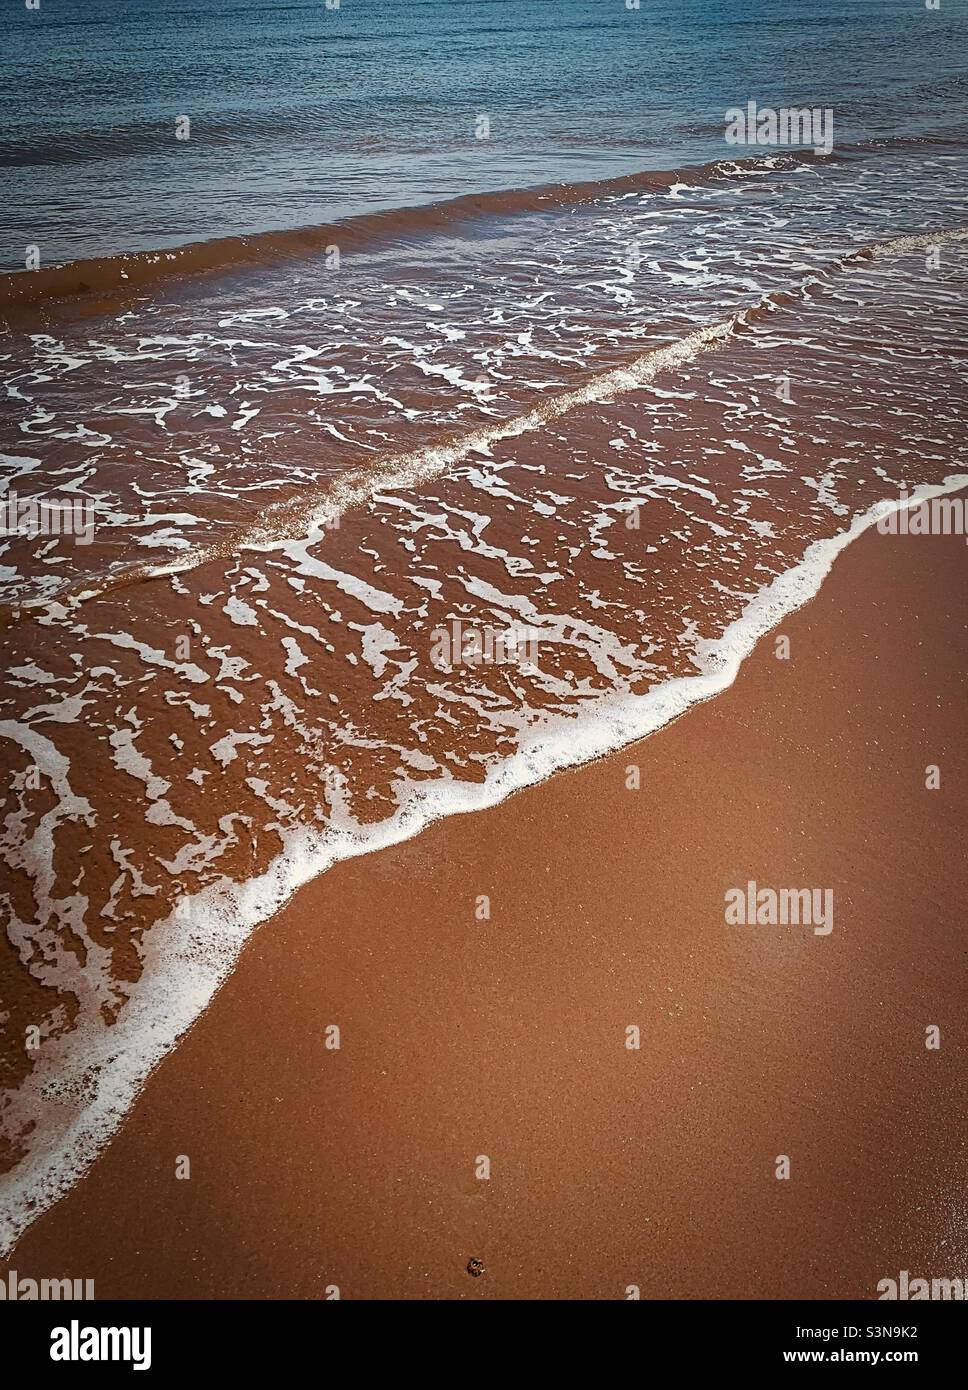 Le onde di ‘Serenity’ spennellano delicatamente la sabbia sulla spiaggia di cui sono fatti i sogni Foto Stock